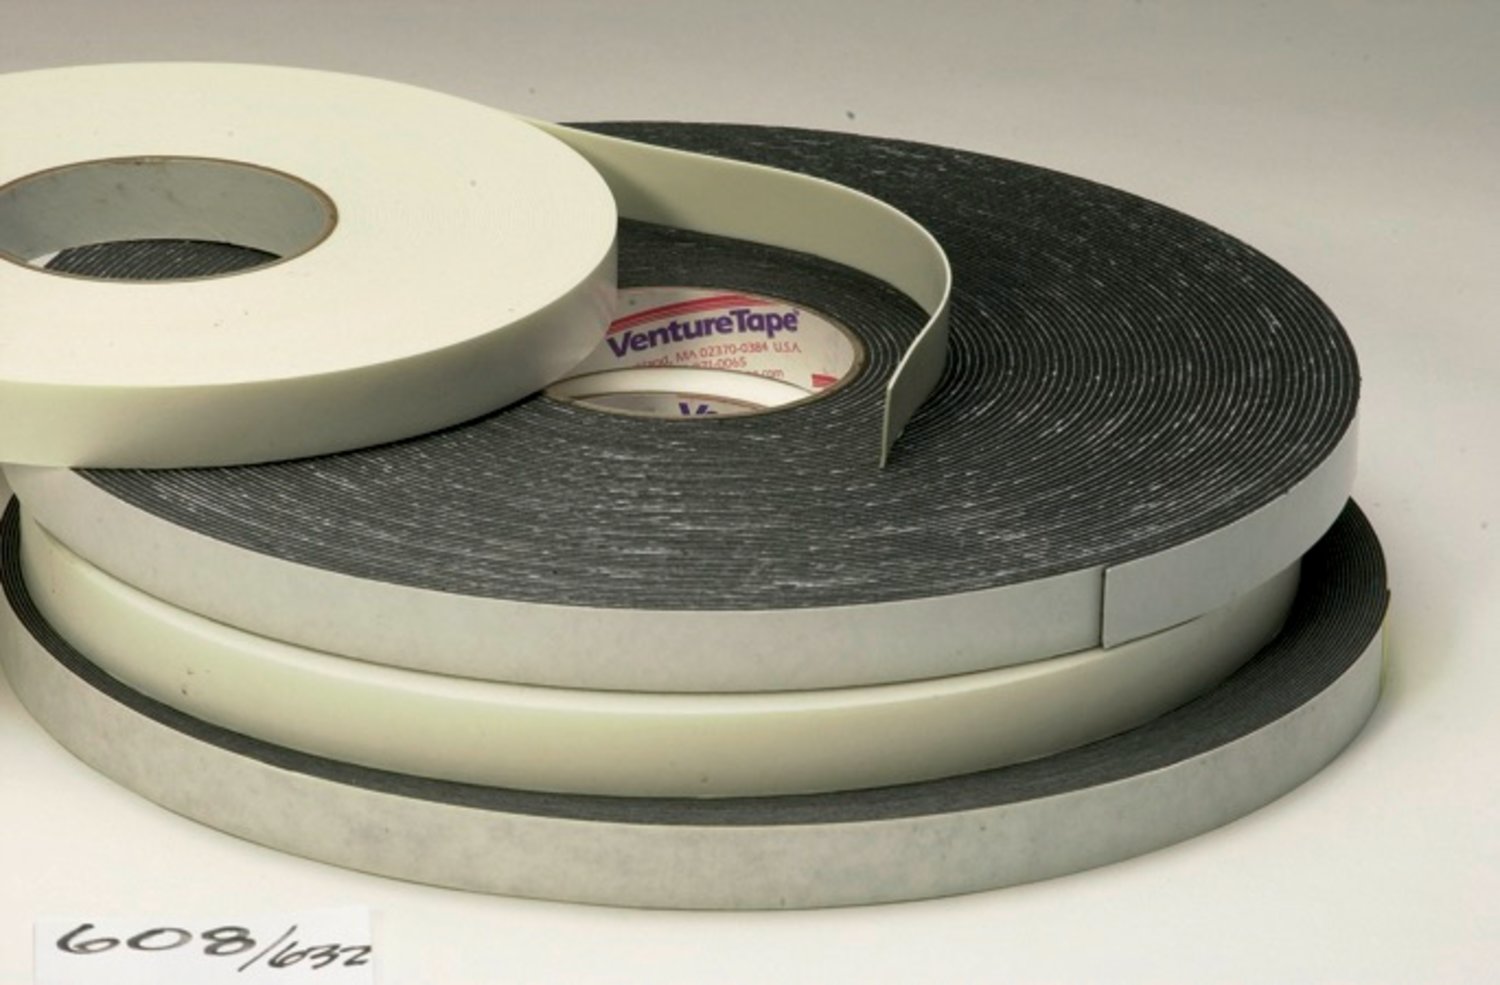 7100043970 - 3M Venture Tape Double Sided Polyethylene Foam Glazing Tape VG1216,
Black, 3/8 in x 150 ft, 62 mil, 53 rolls per case